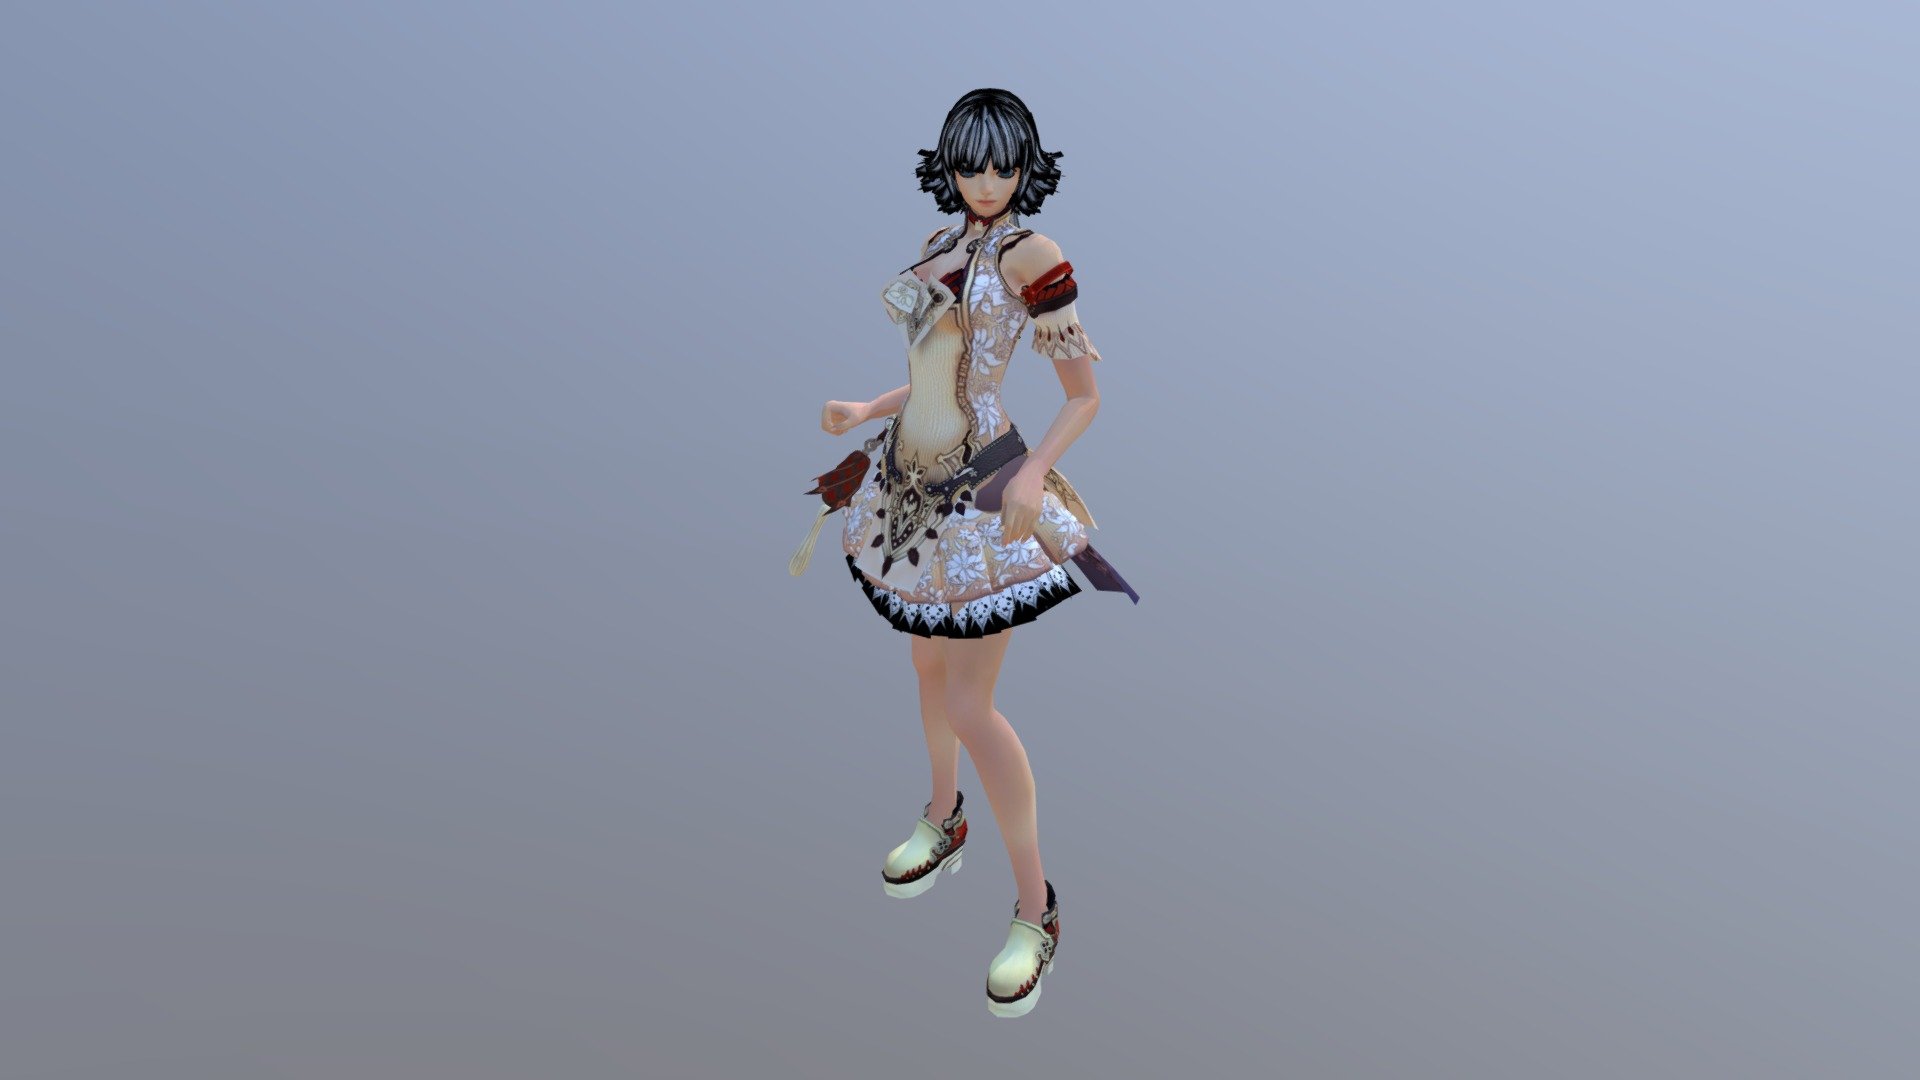 Source: http://www.cadnav.com/3d-models/model-41015.html - 3D model of cute anime girl - 3D model by CesPaul 3d model